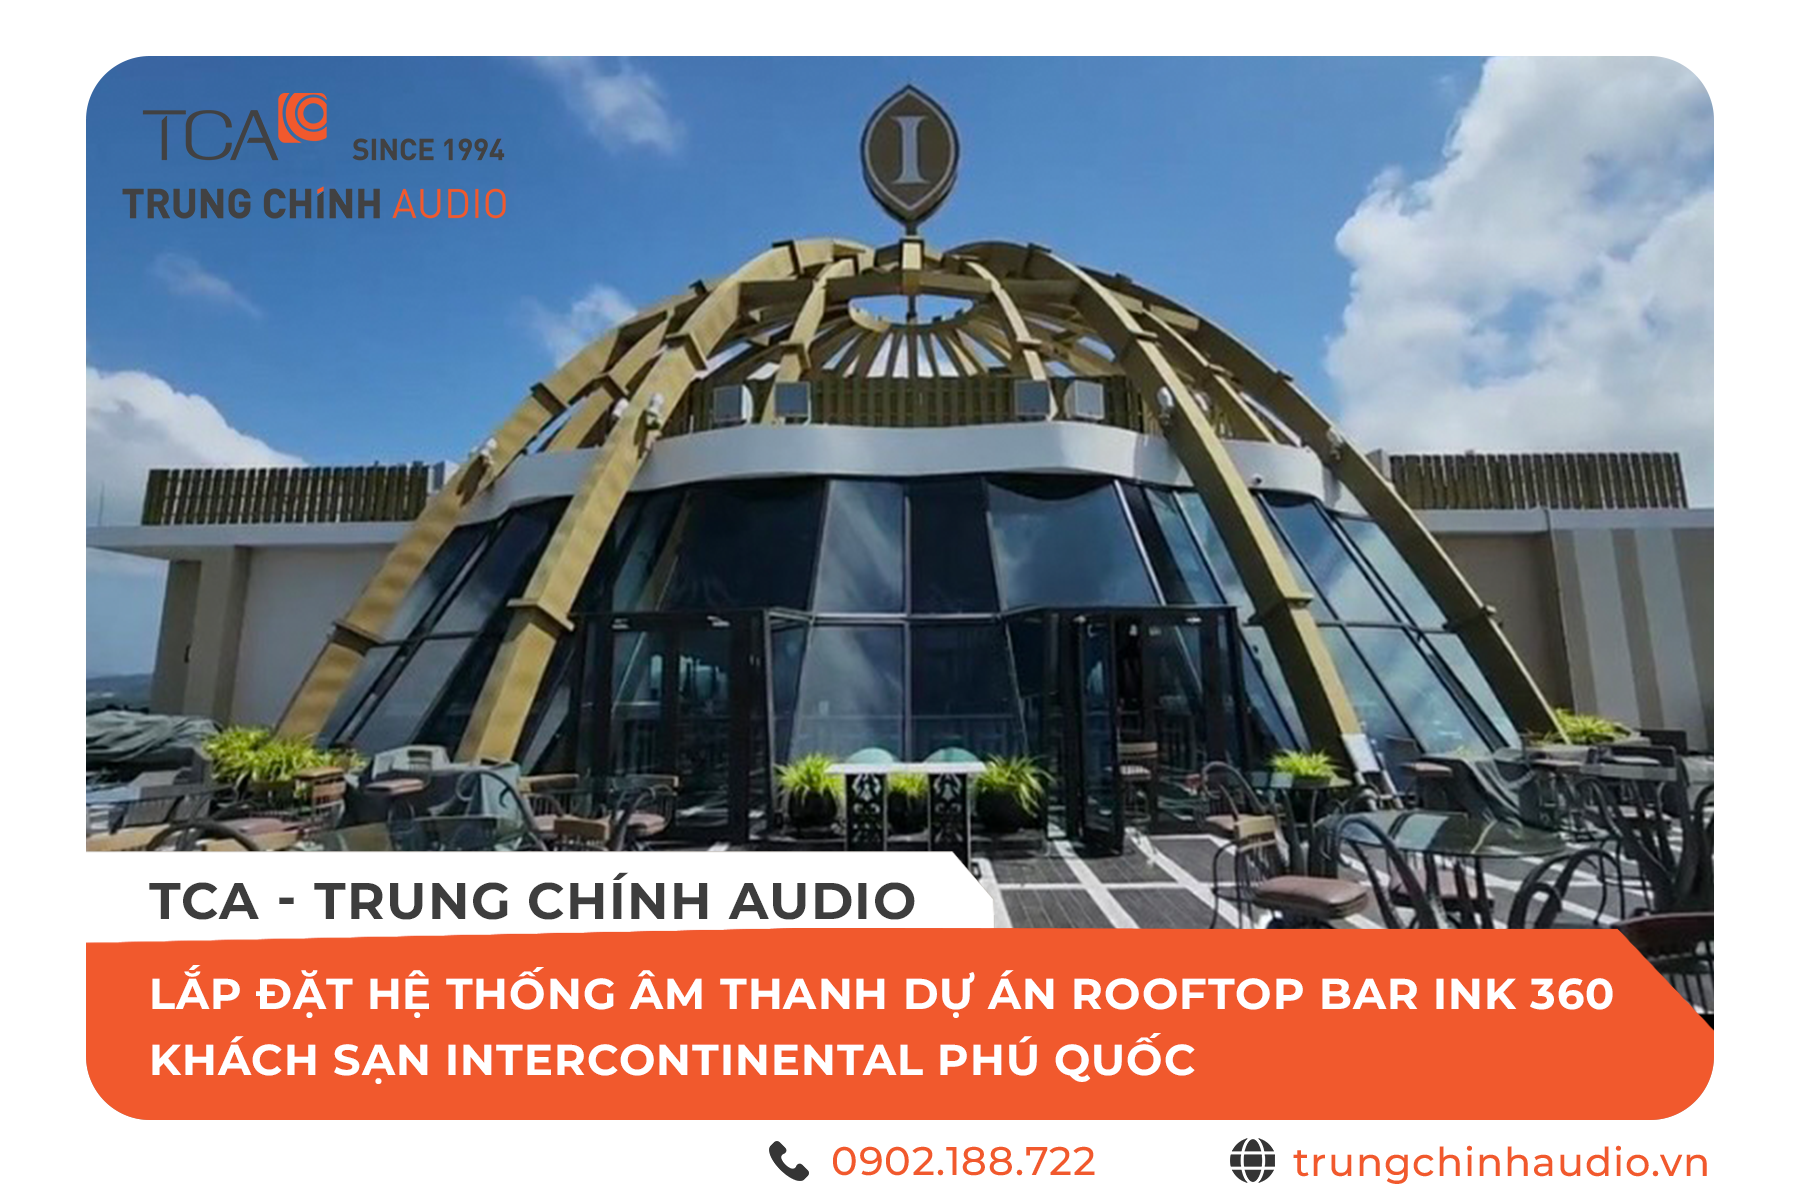 Trải nghiệm âm thanh JBL tại Rooftop Bar Ink360 - Khách sạn Intercontinental Phú Quốc